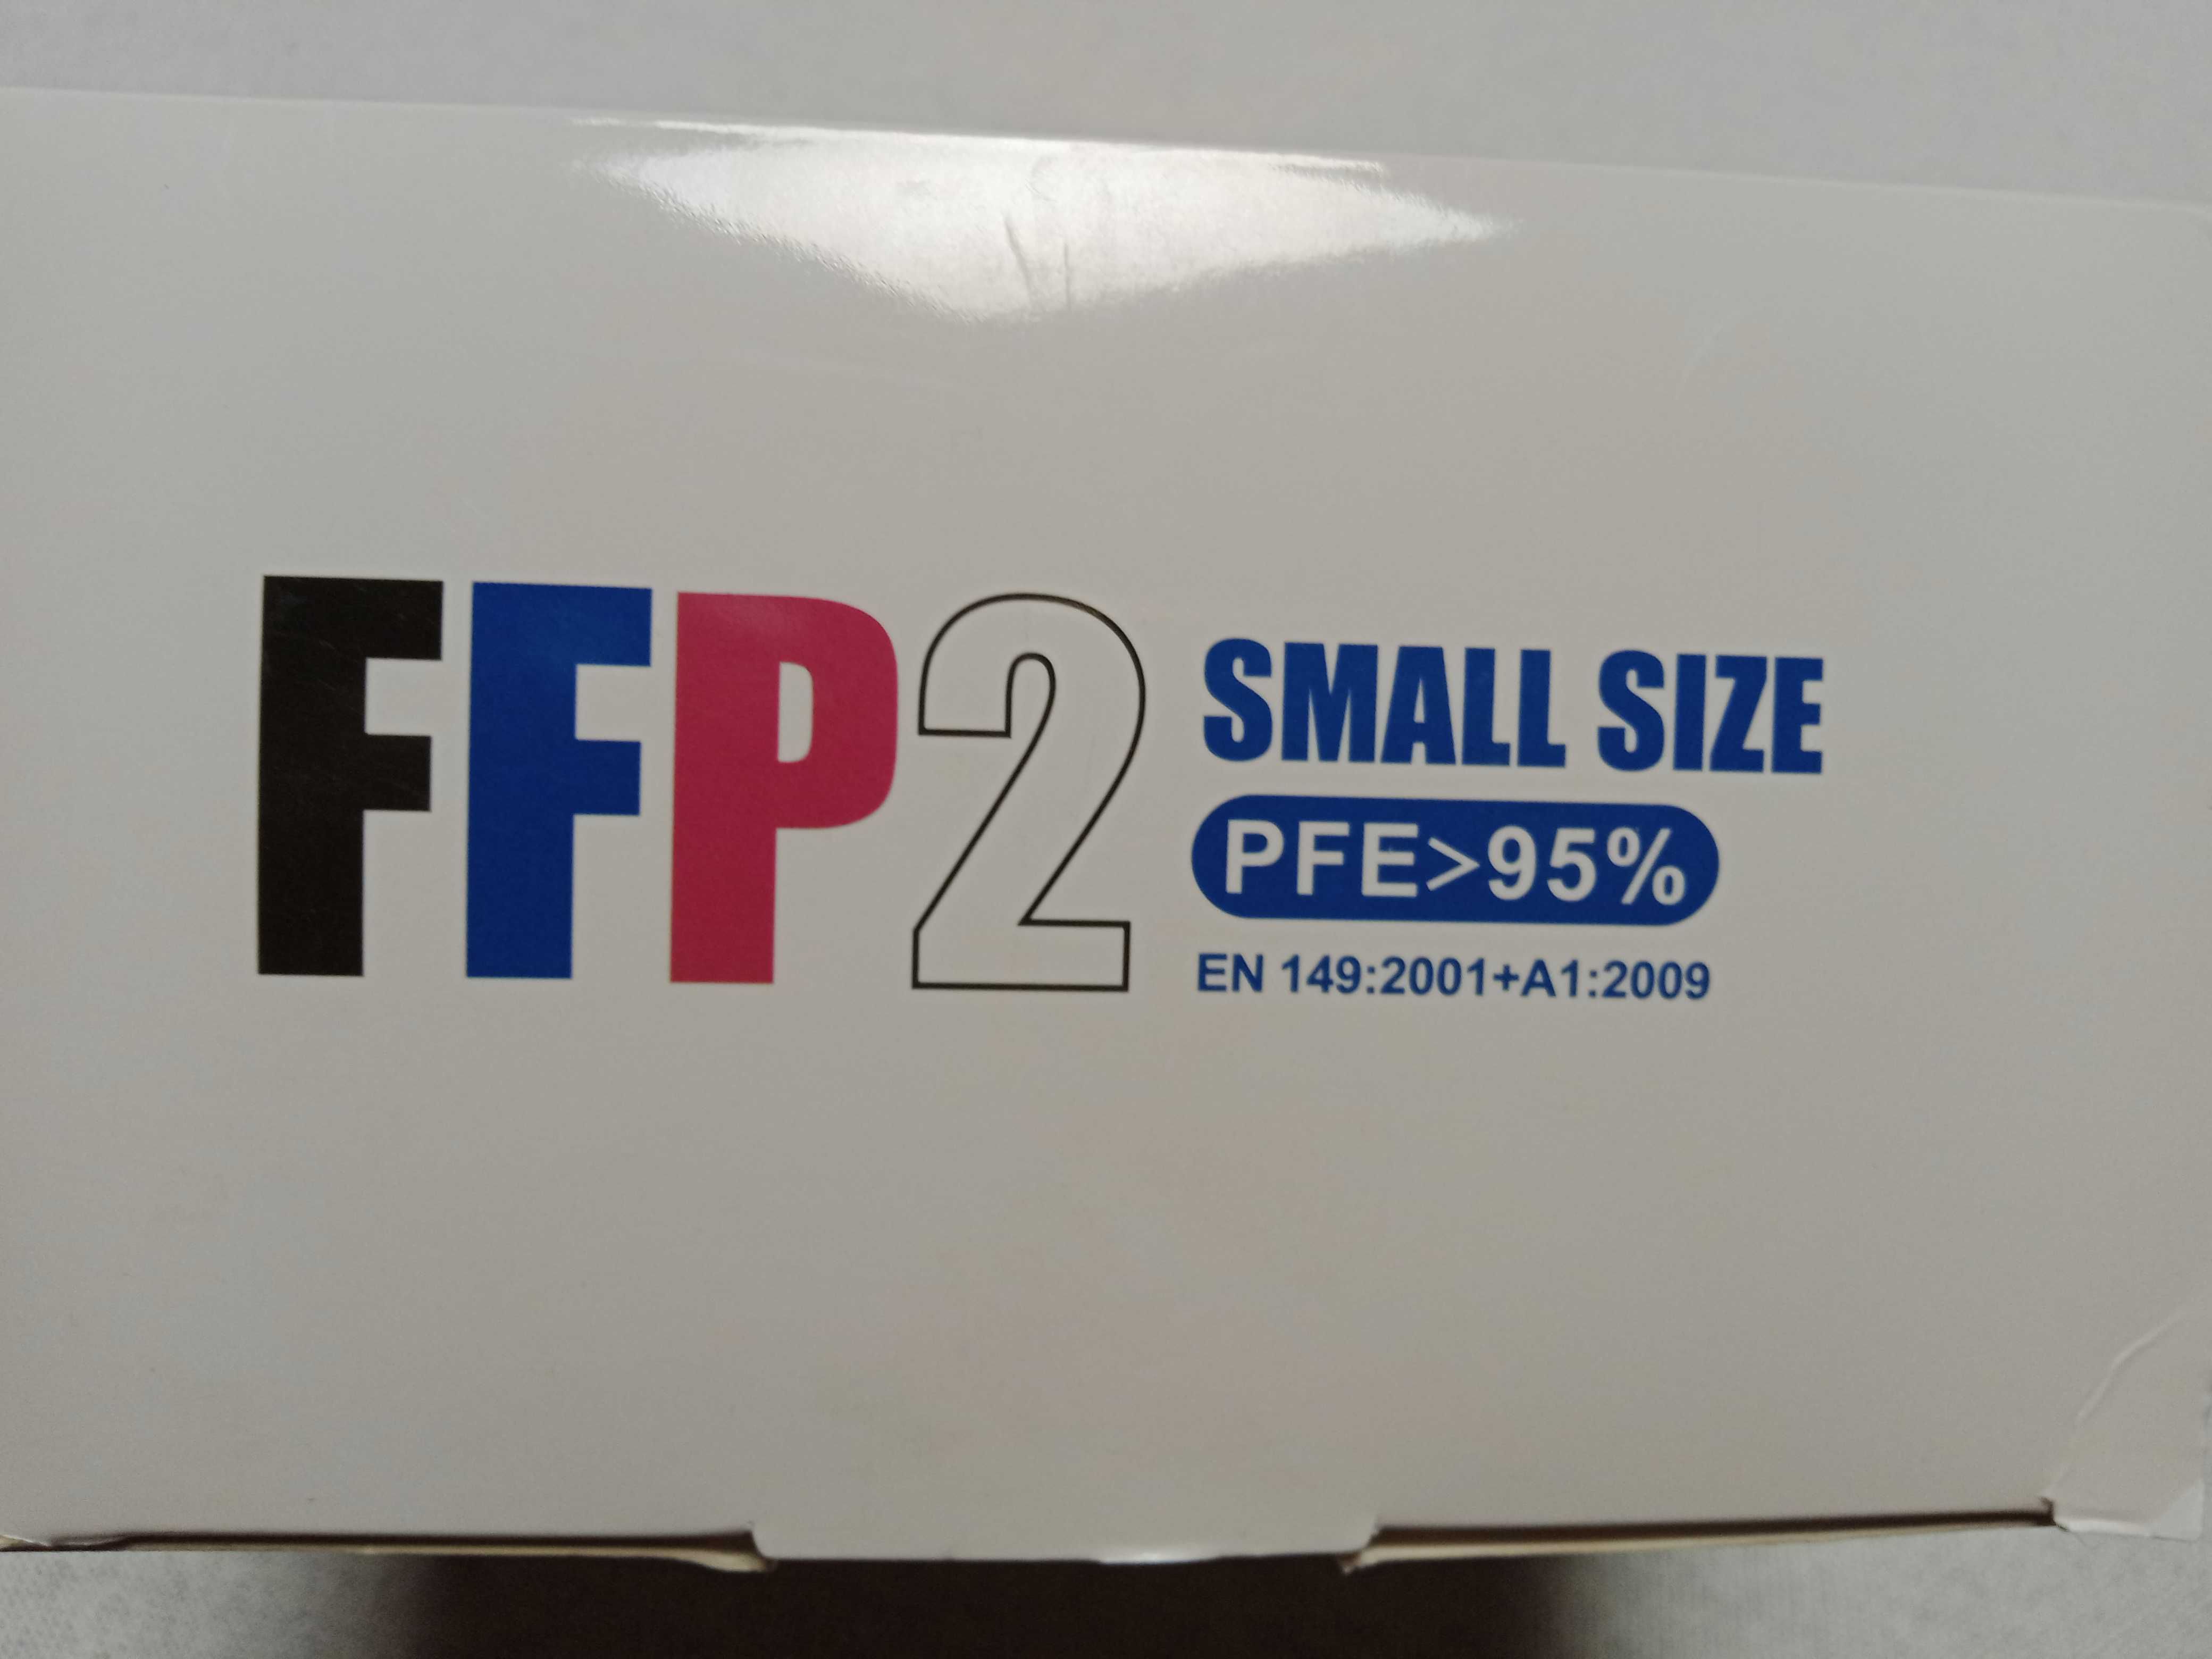 Maseczki ffp2 rozmiar S, nowe. Pfe 95% w opakowaniu 20 sztuk.